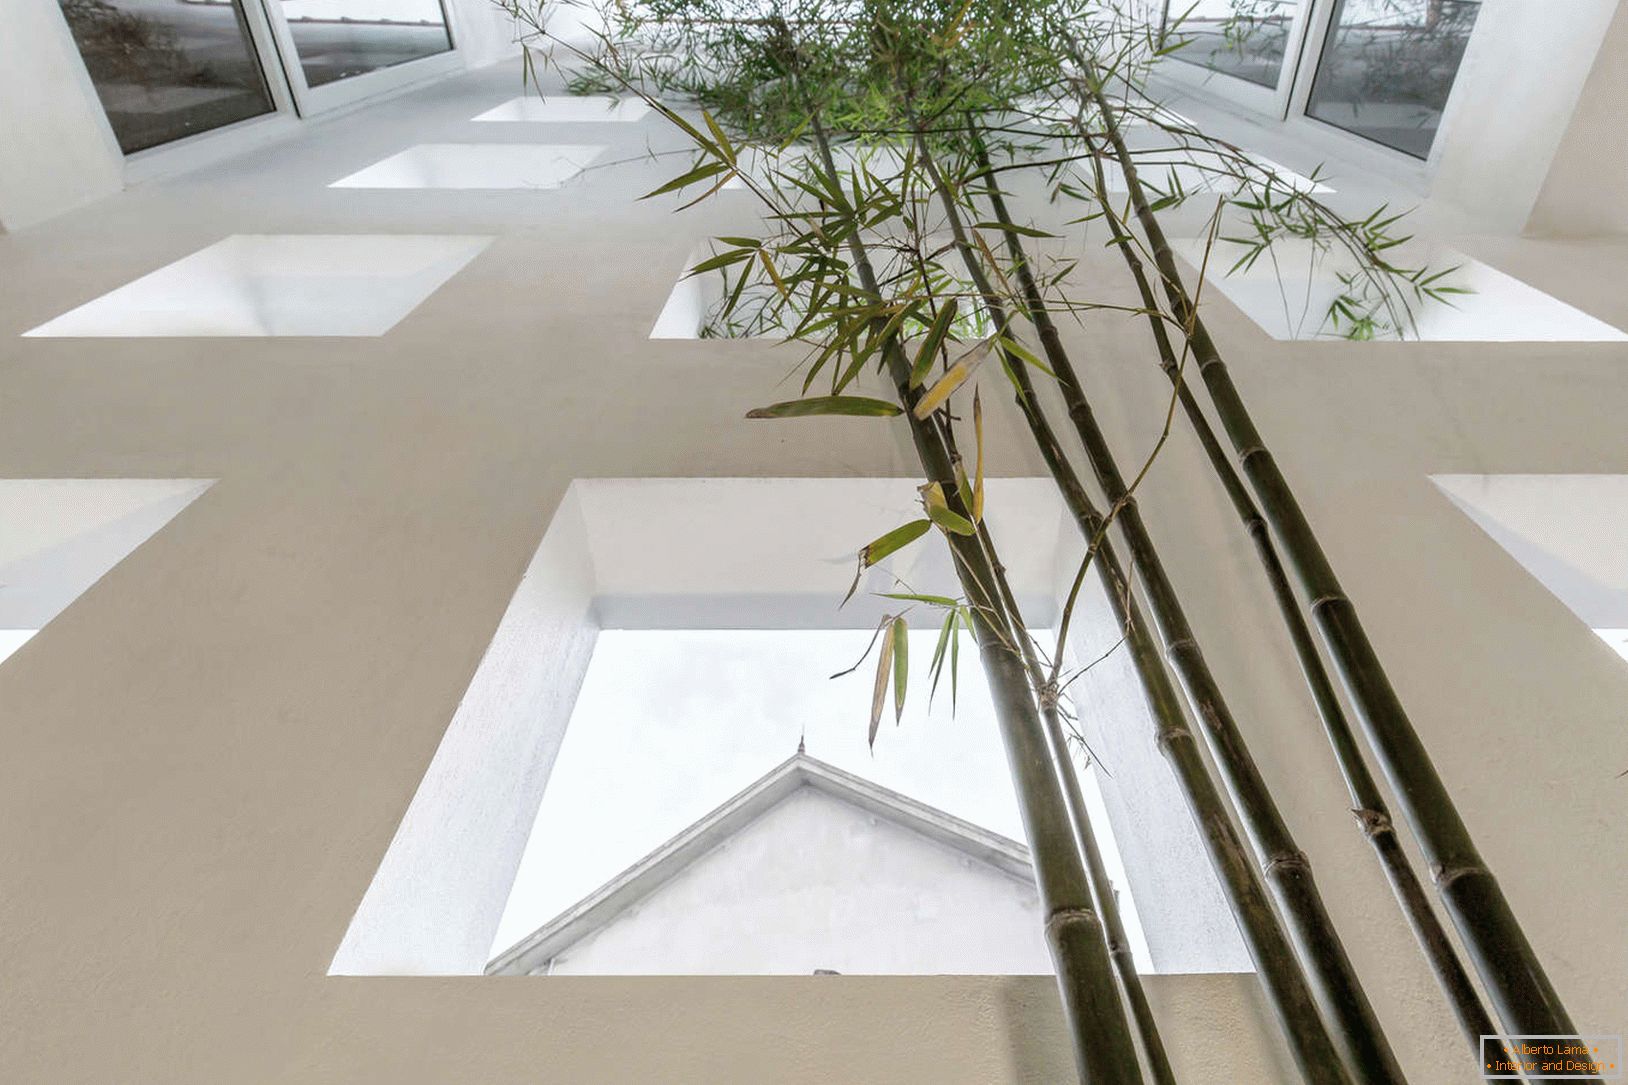 Bambu em uma casa estreita de concreto